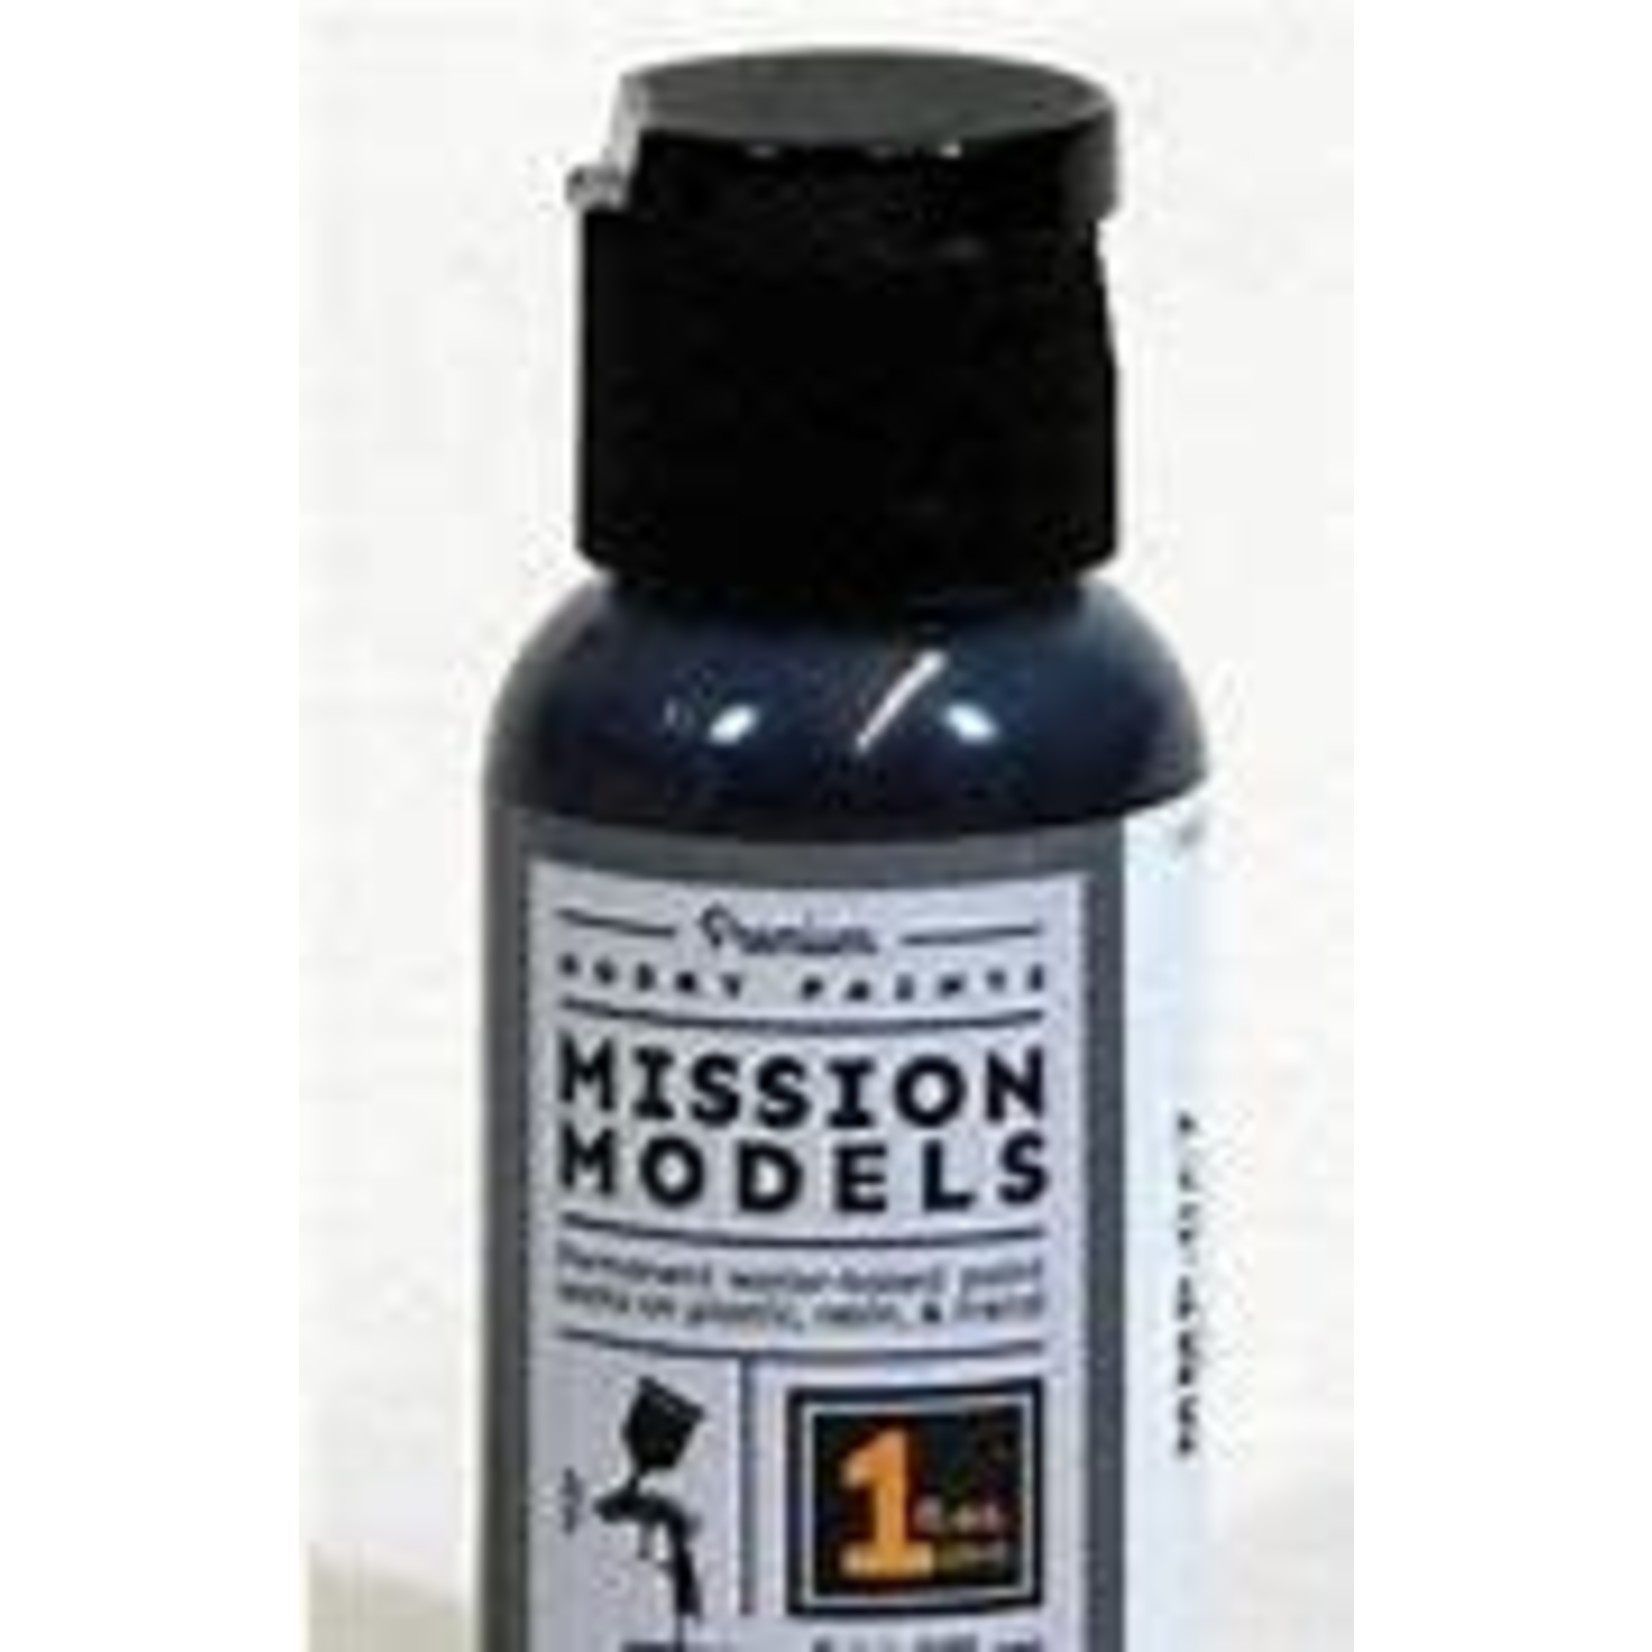 Mission Models Black 1oz